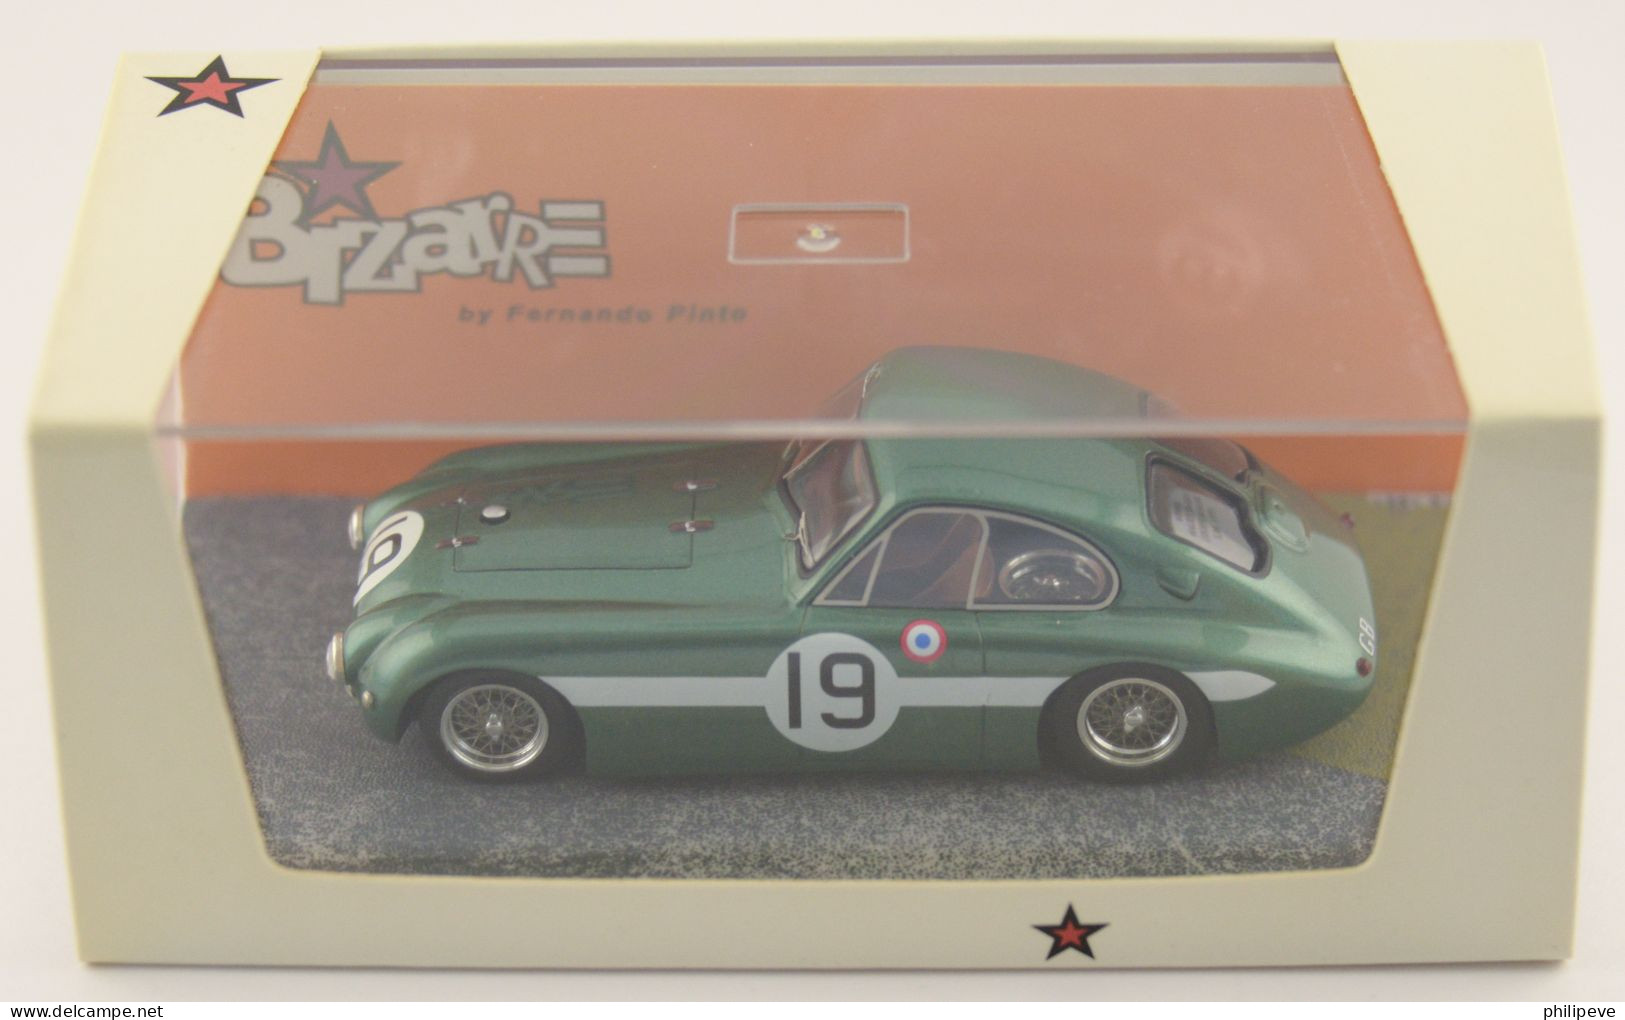 Le Mans 1951 - HEALEY  Sport Coupé - BIZARRE 1:43